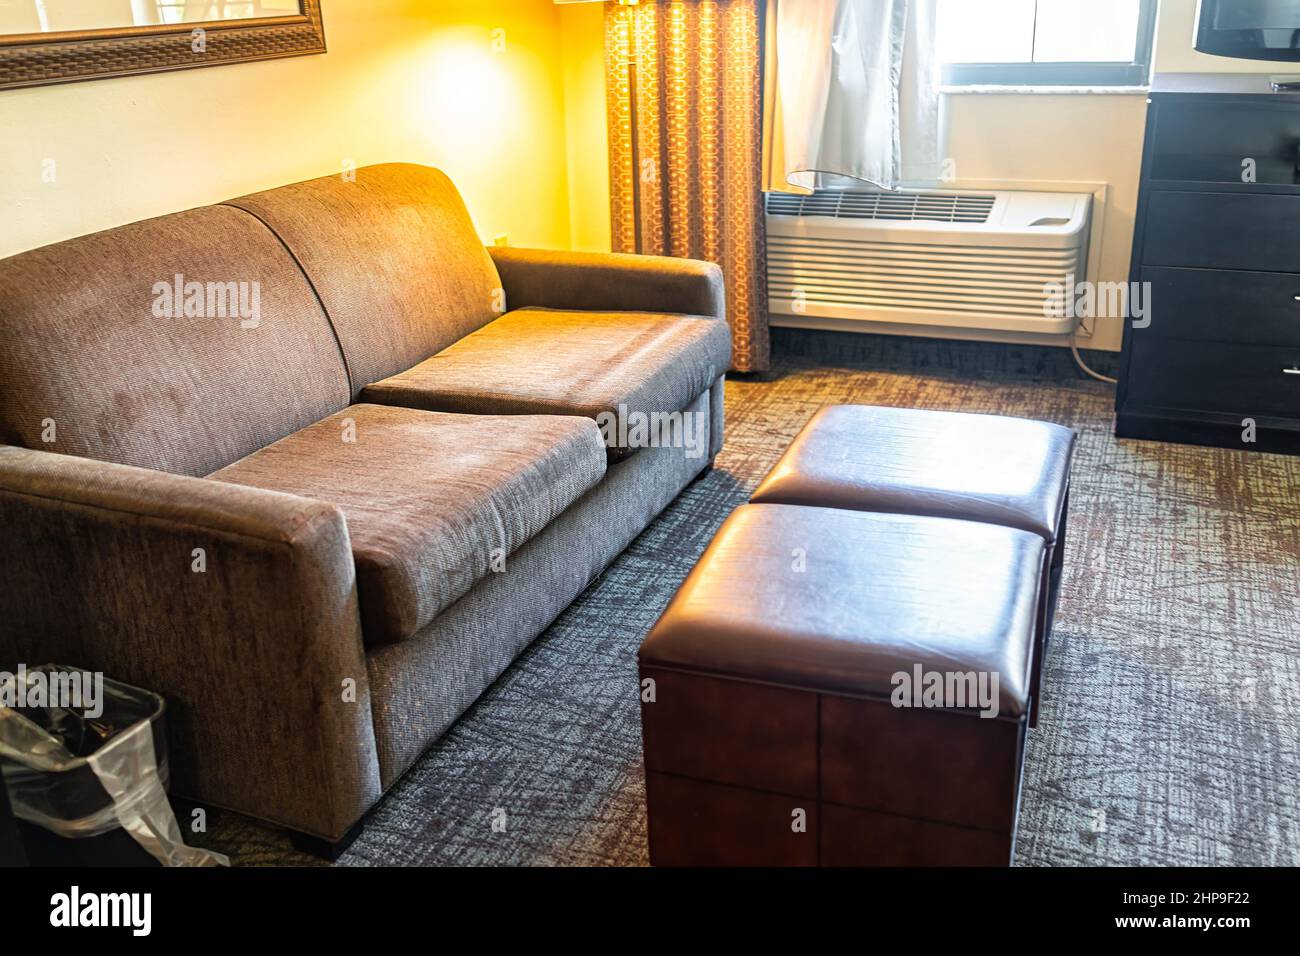 Hotel-Suite oder Studio-Zimmer Sofa Couch Lampe Wohnzimmer in modernen Hotel  Motel Zimmer mit niemand keine Menschen im Inneren mit Fußstütze  komfortable furn Stockfotografie - Alamy